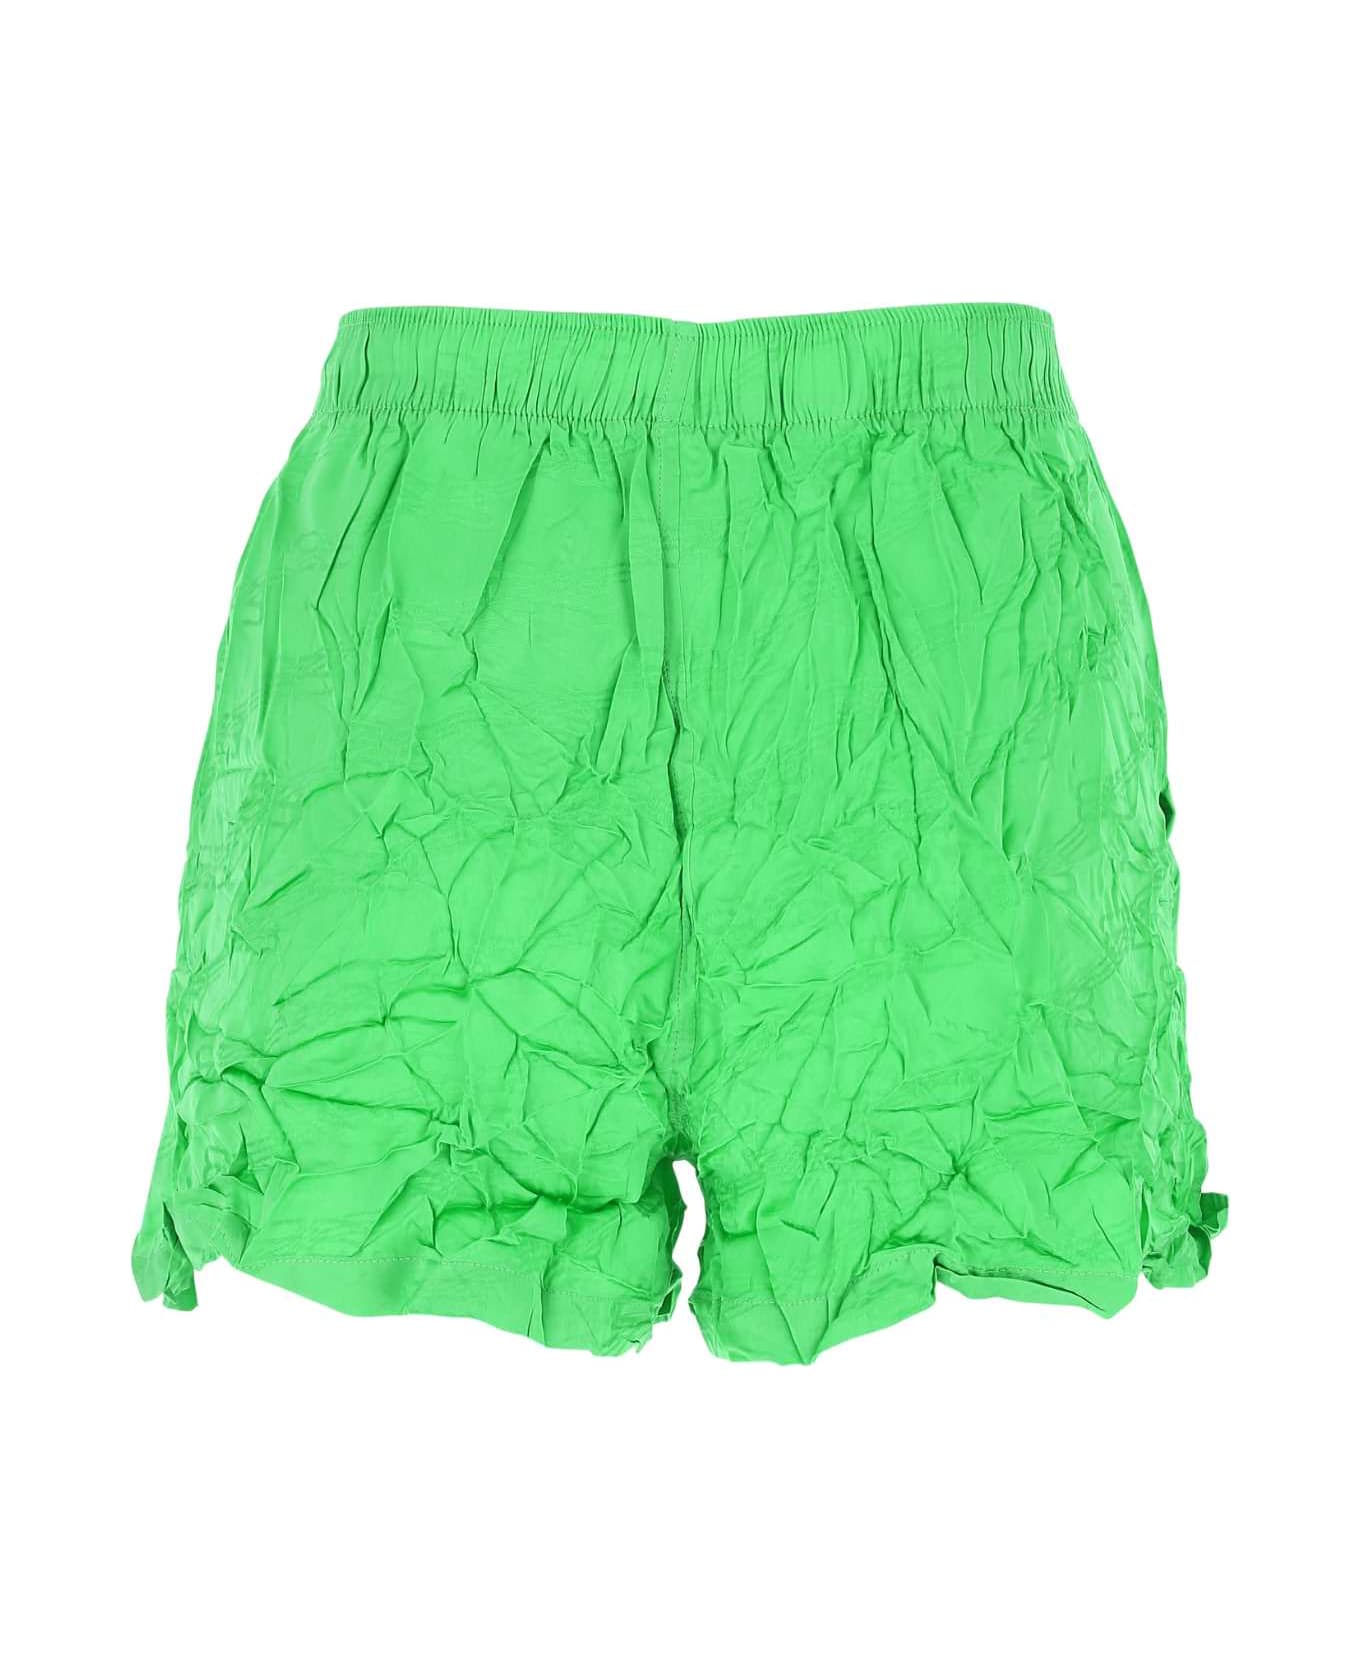 Balenciaga Fluo Green Viscose Shorts - 3076